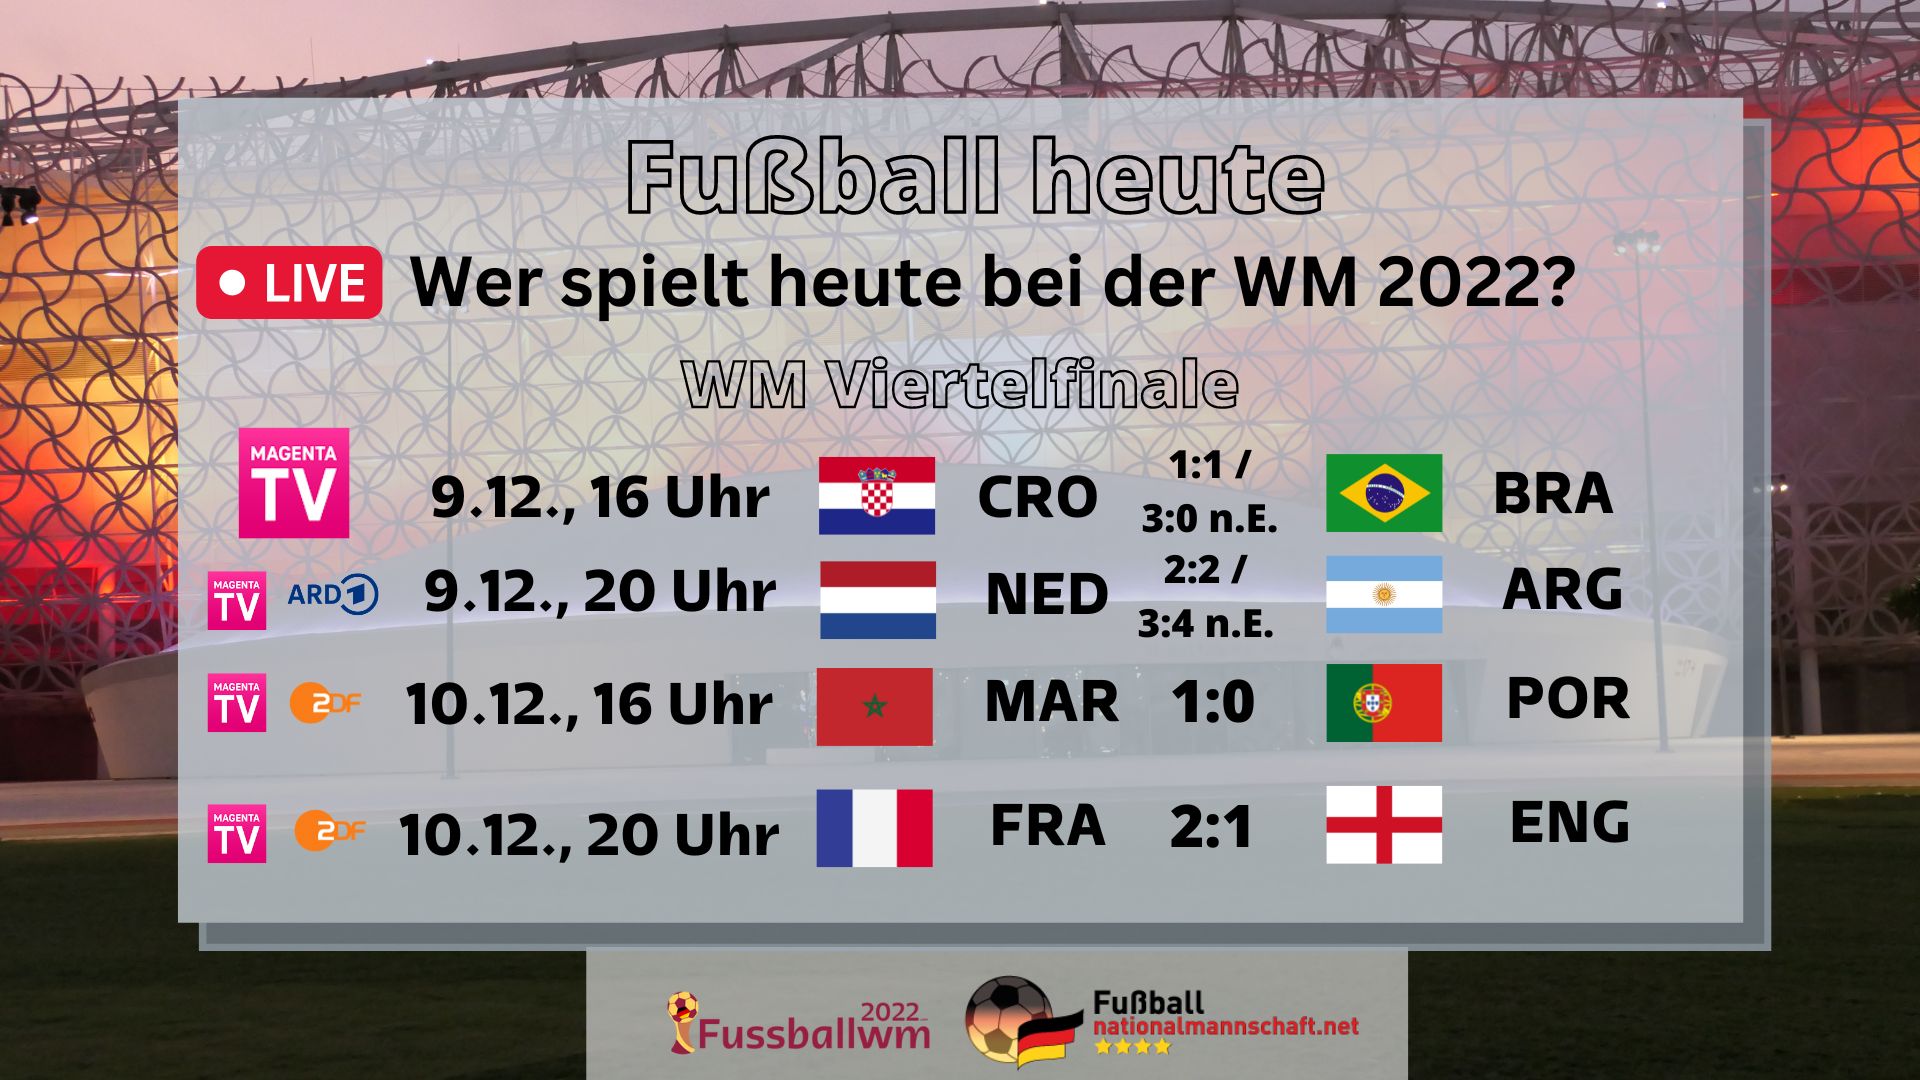 Fussball WM 2022 Spielplan